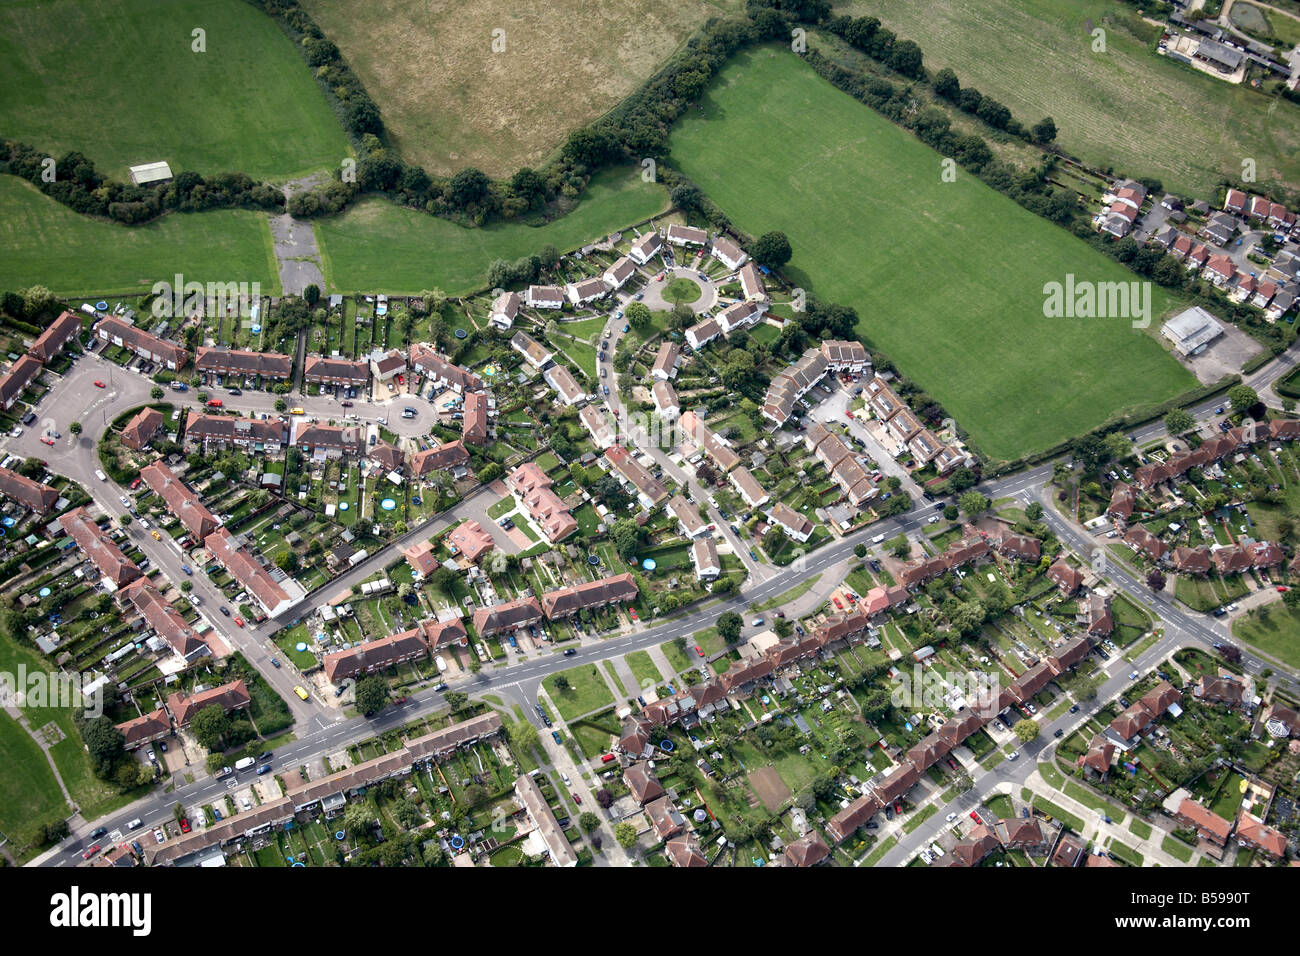 Vue aérienne nord-ouest de l'habitat pavillonnaire champs pays développement Oakleigh Park Barnet Greater London England UK N20 Banque D'Images